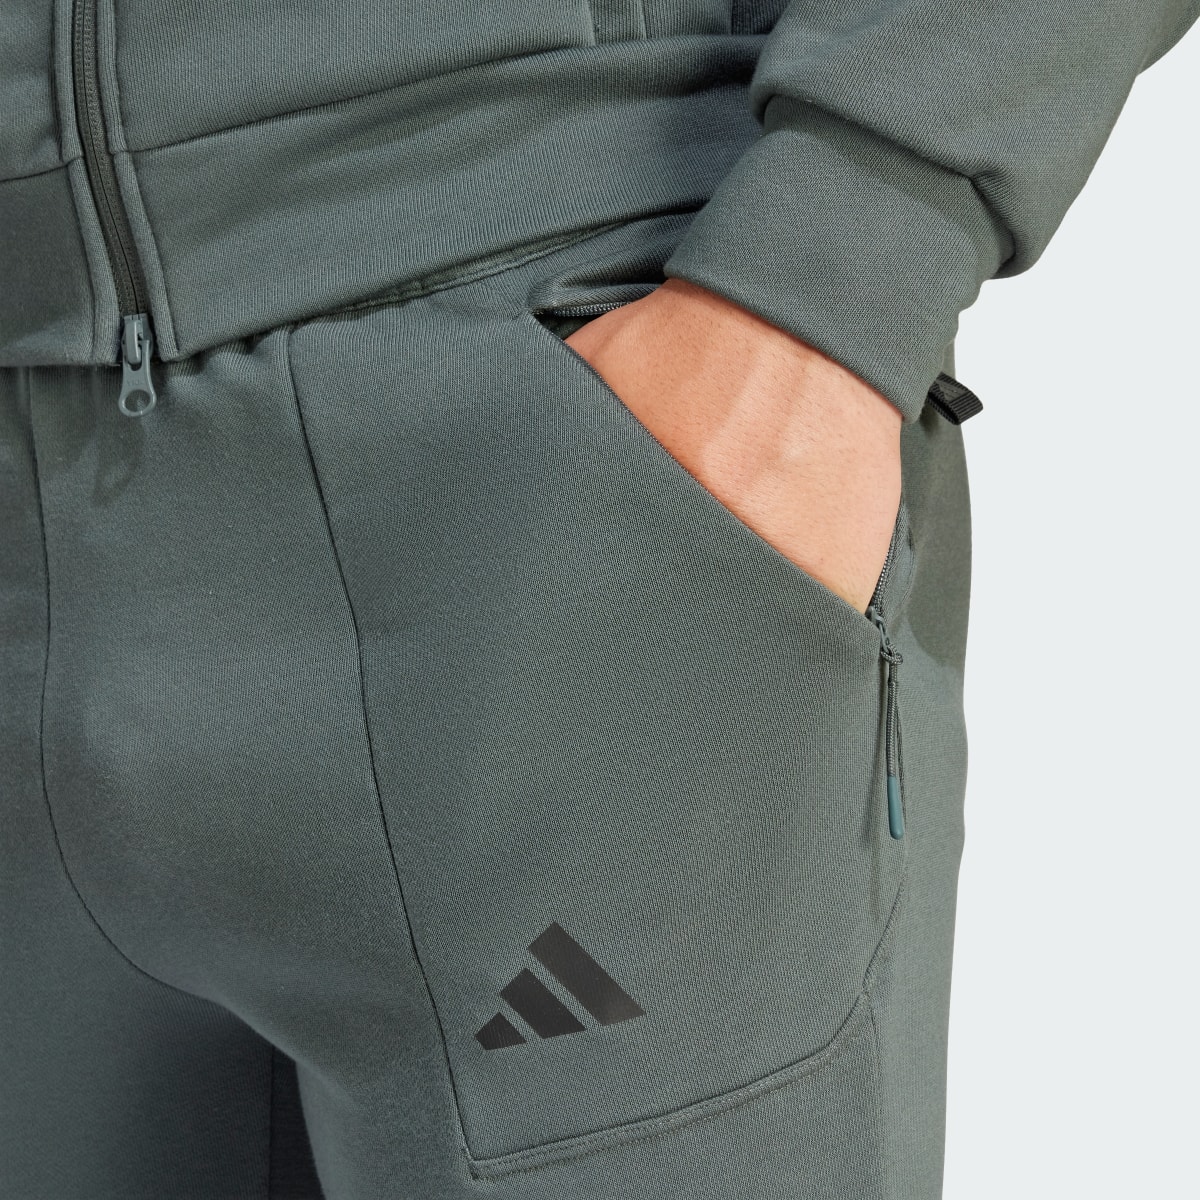 Adidas Pump Workout Pants. 6